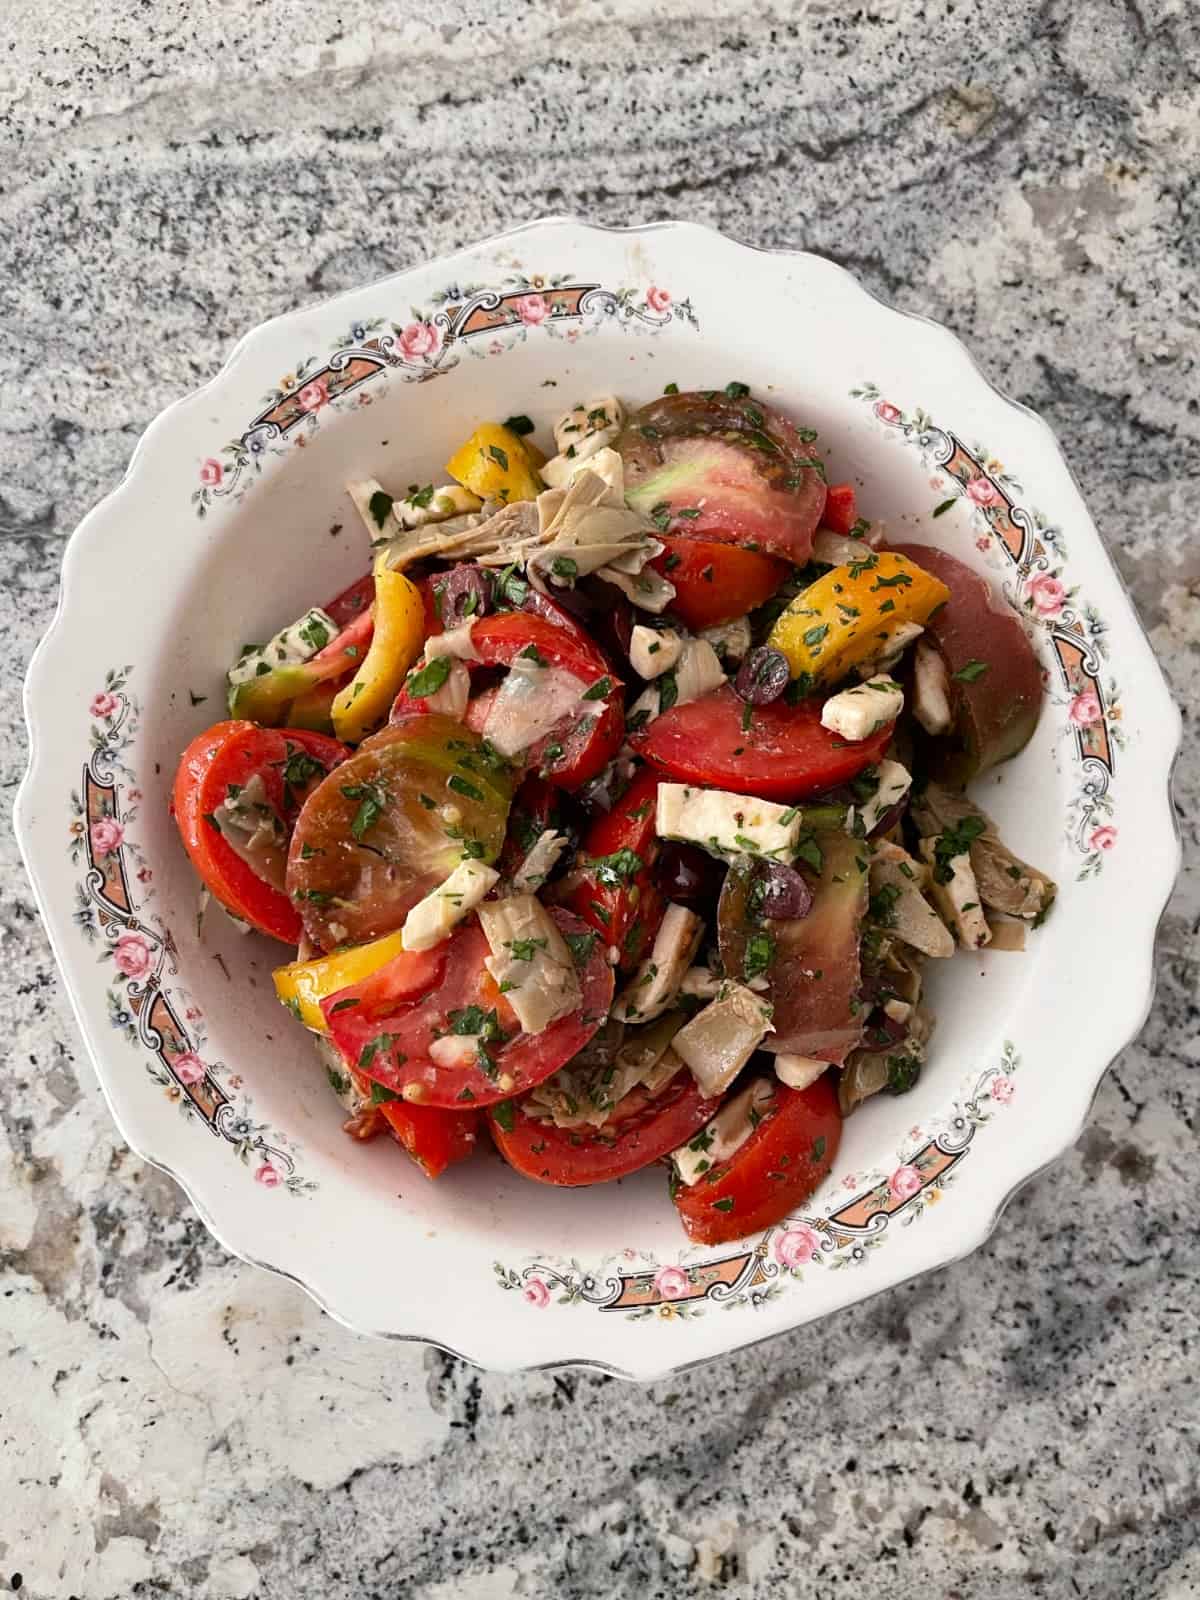 Artichoke tomato salad with mozzarella in white bowl.